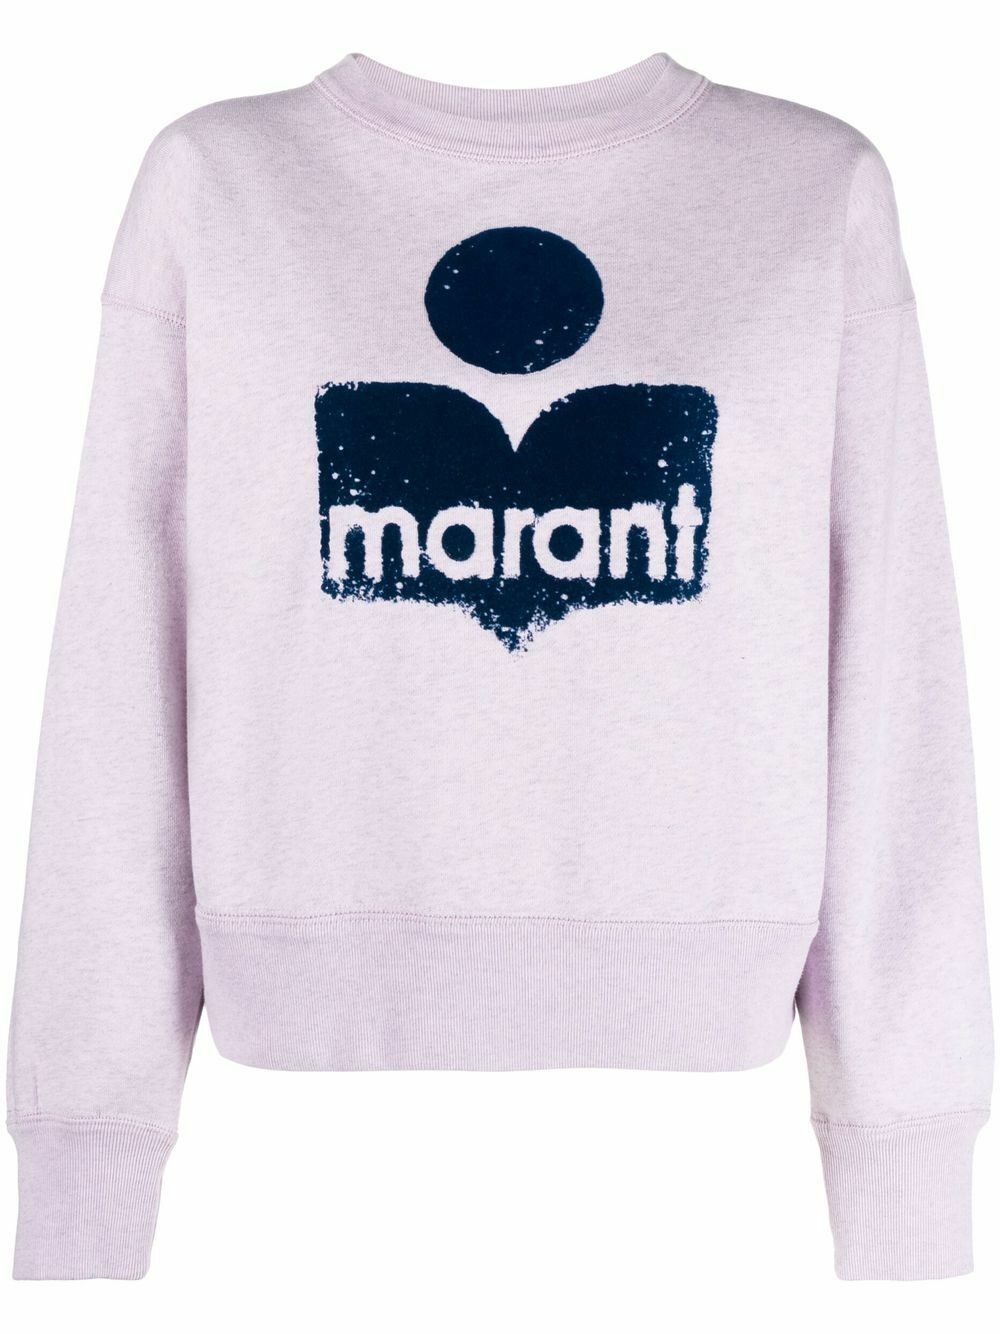 MARANT ETOILE - Mobyli Cotton Sweatshirt Isabel Marant Etoile